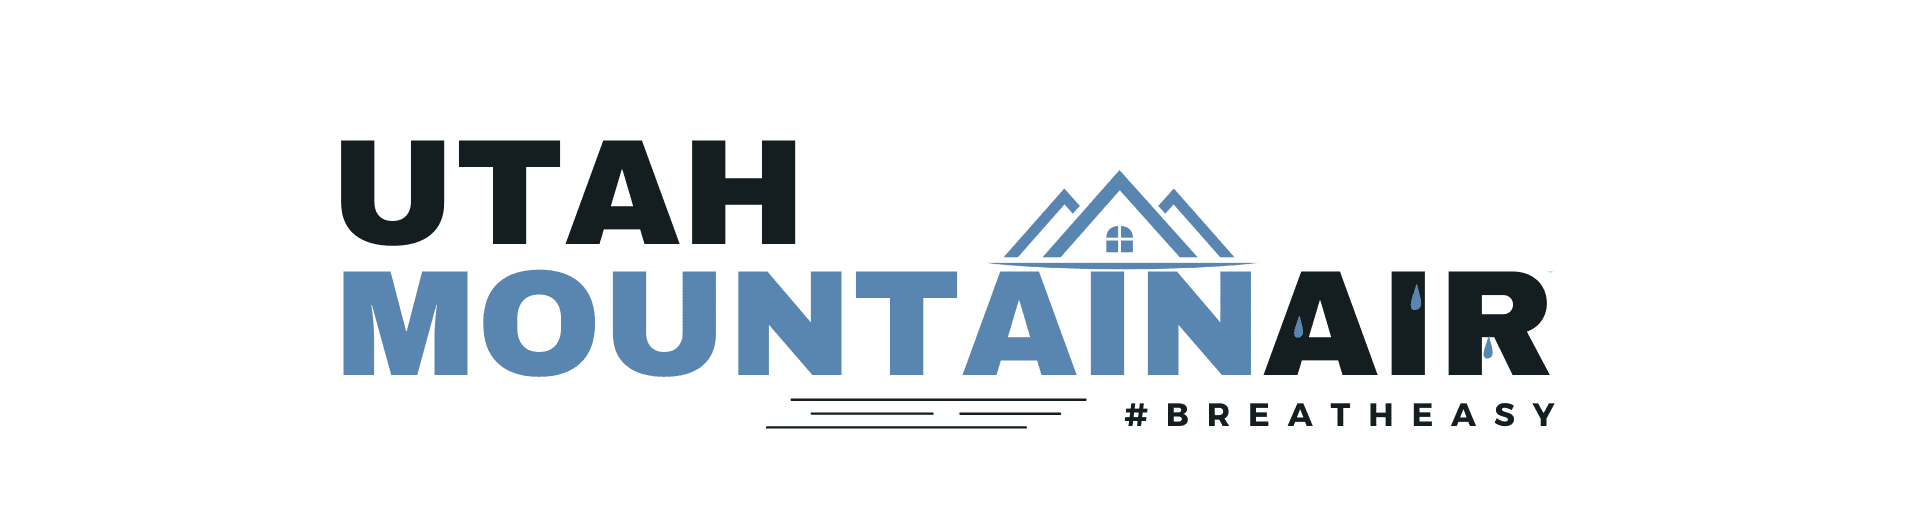 Utah Mountain Air